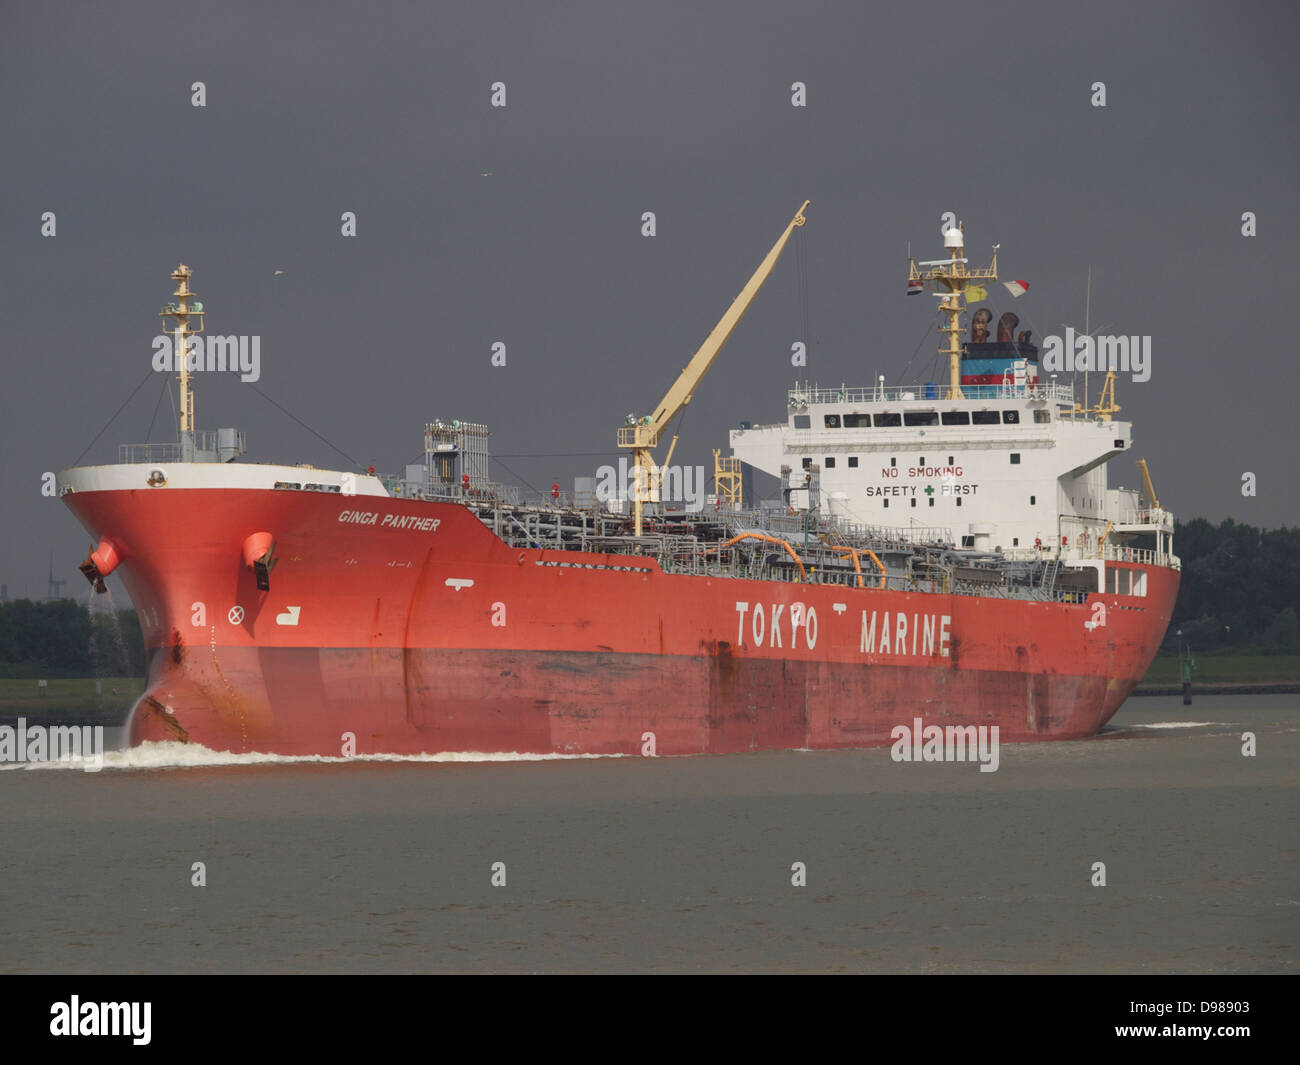 Tokio Marine-Tanker Schiff namens Ginga Panther im Hafen von Rotterdam, Niederlande Stockfoto